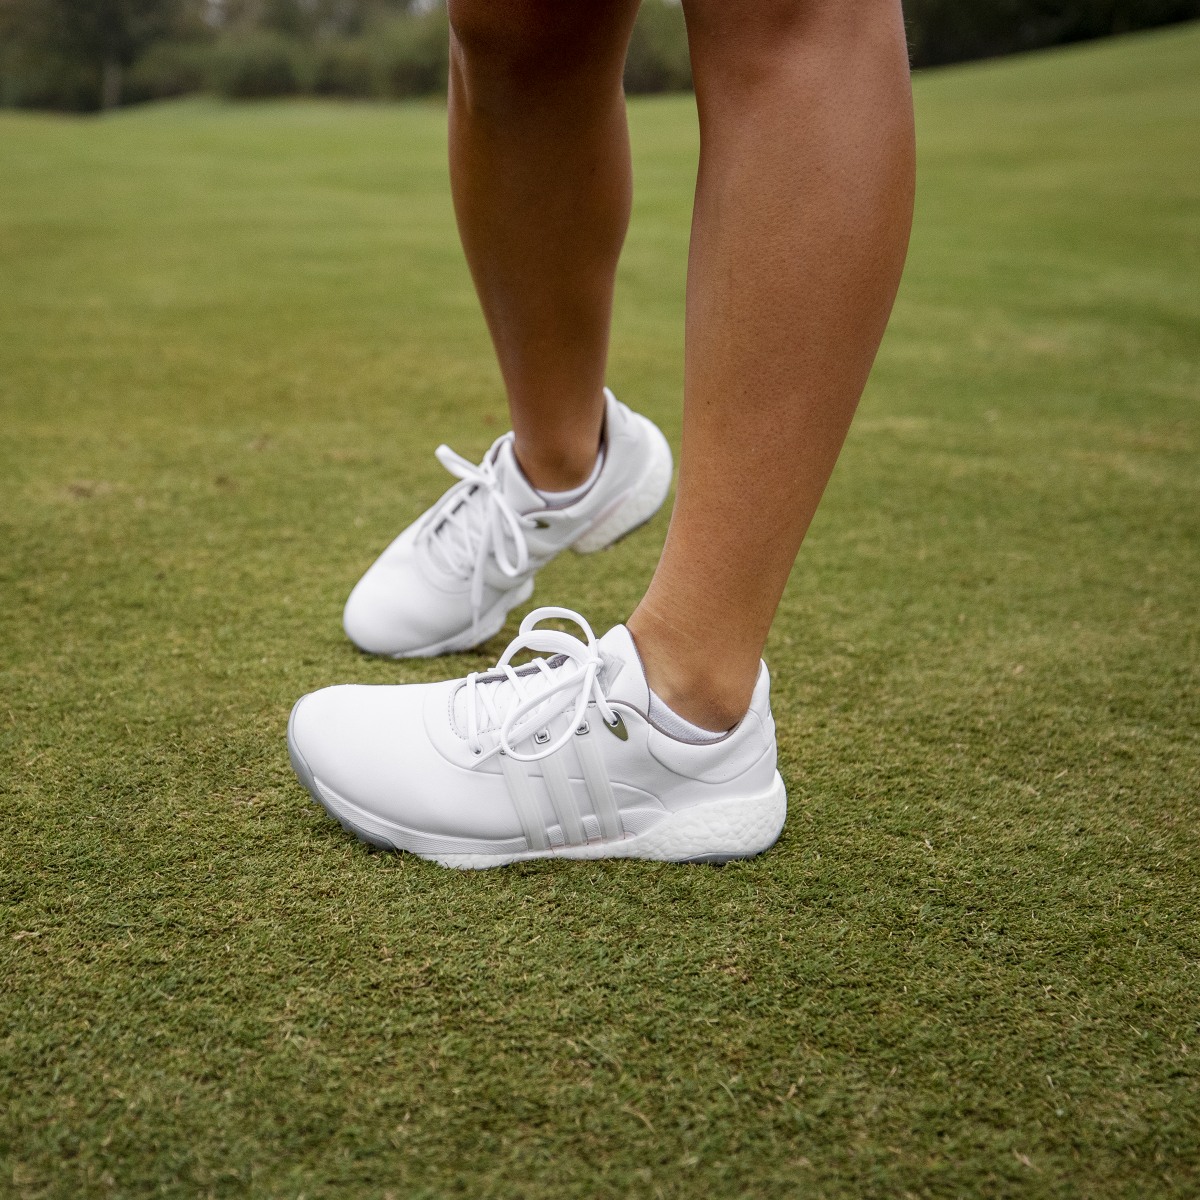 Adidas Buty Women's Tour360 22 Golf. 5